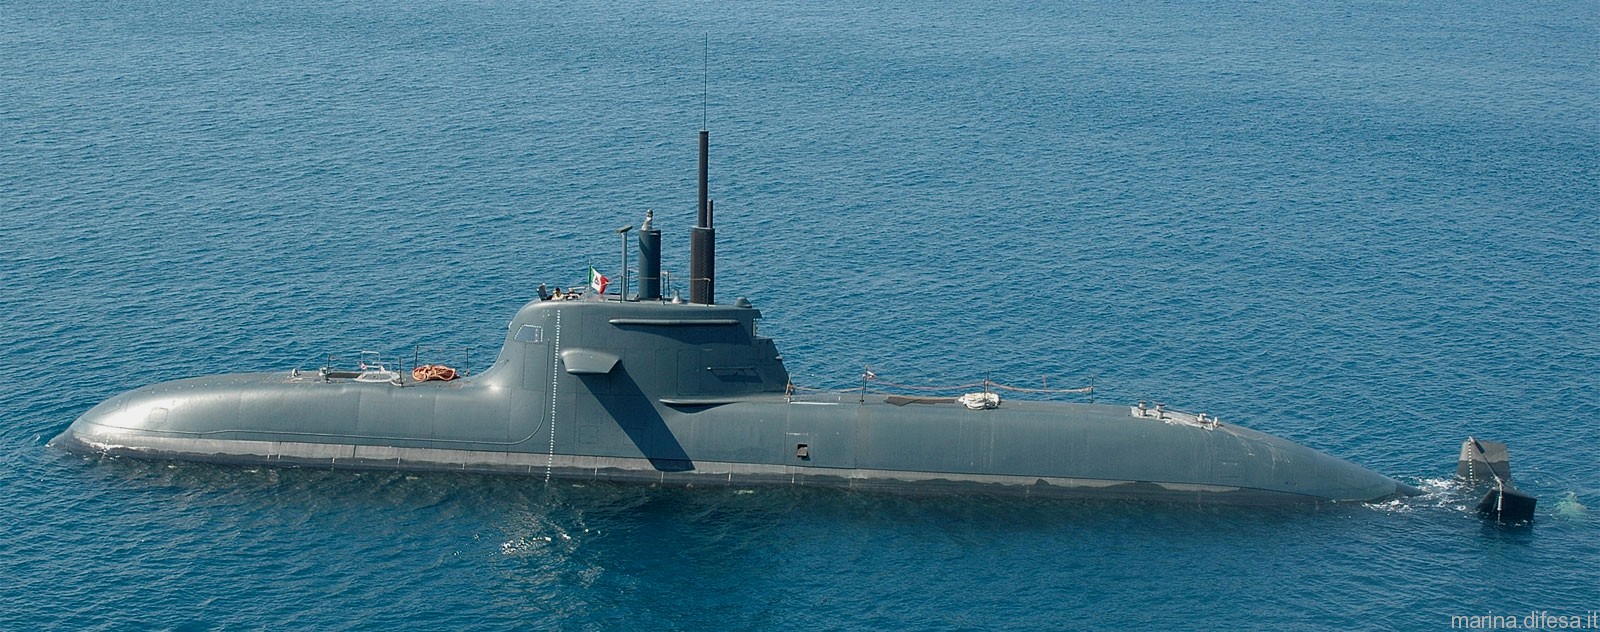 s-526 salvatore todaro its smg type 212 class submarine italian navy marina militare 04